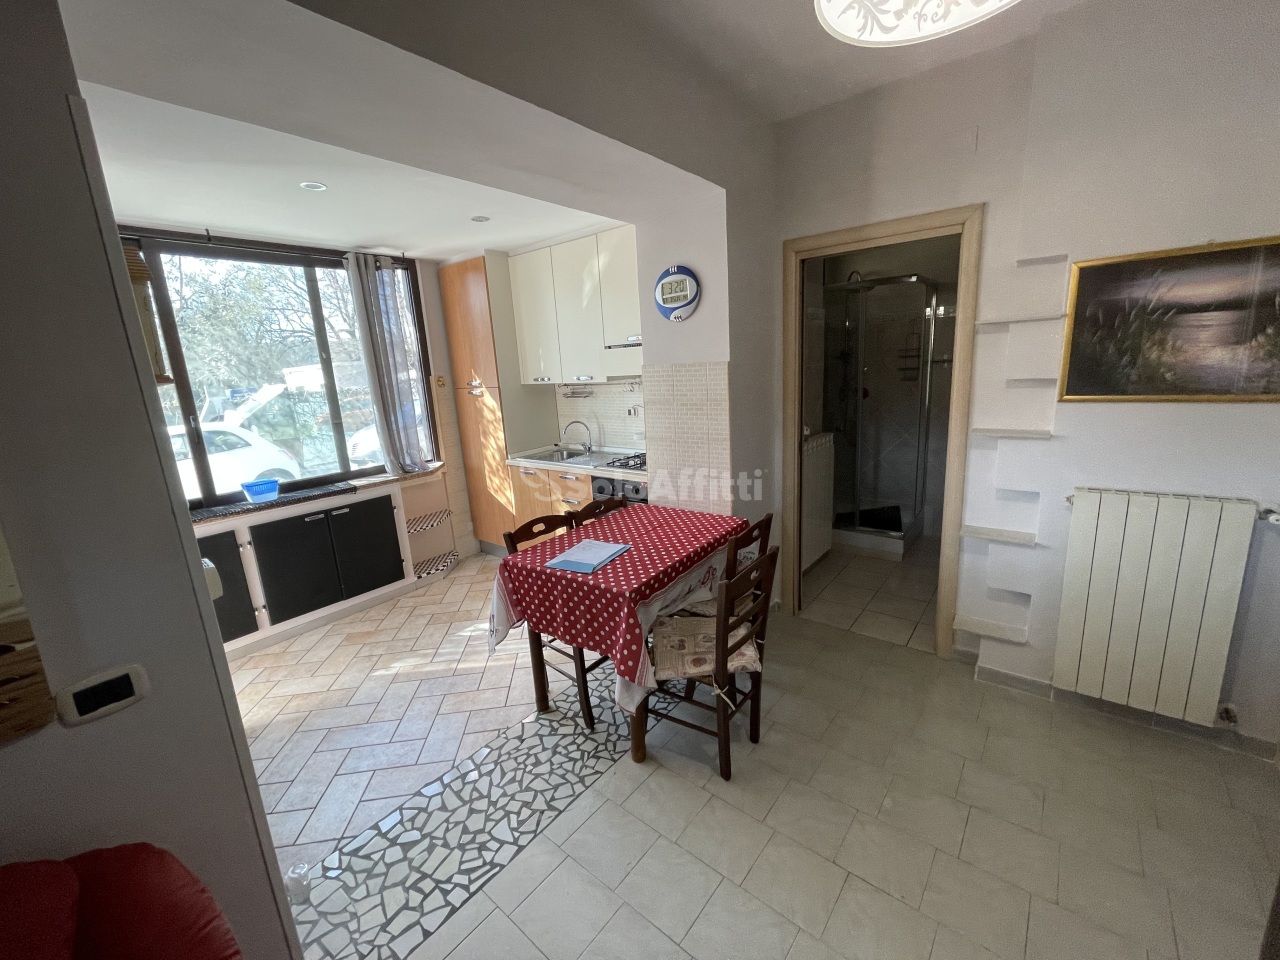 Appartamento in affitto a Ferentino, 2 locali, prezzo € 350 | PortaleAgenzieImmobiliari.it